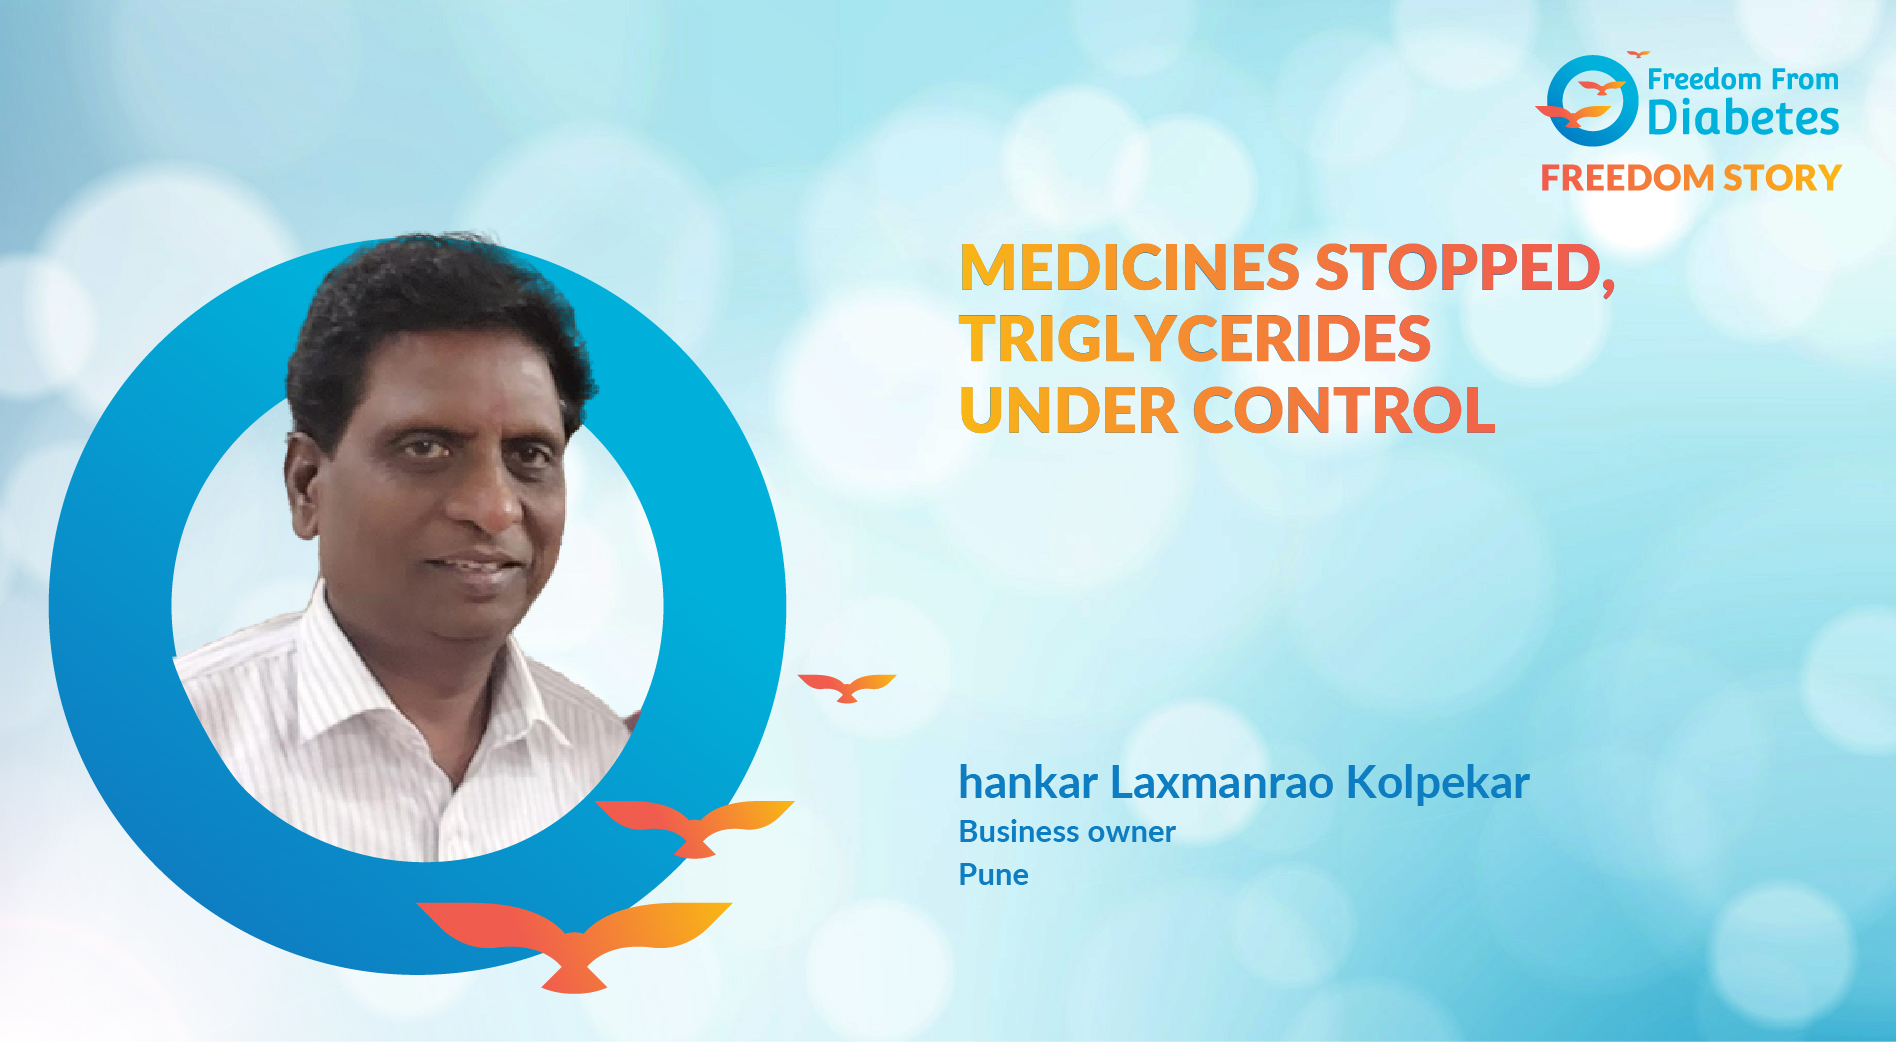 Shankar Laxmanrao Kolpekar: A motivational diabetes reversal story